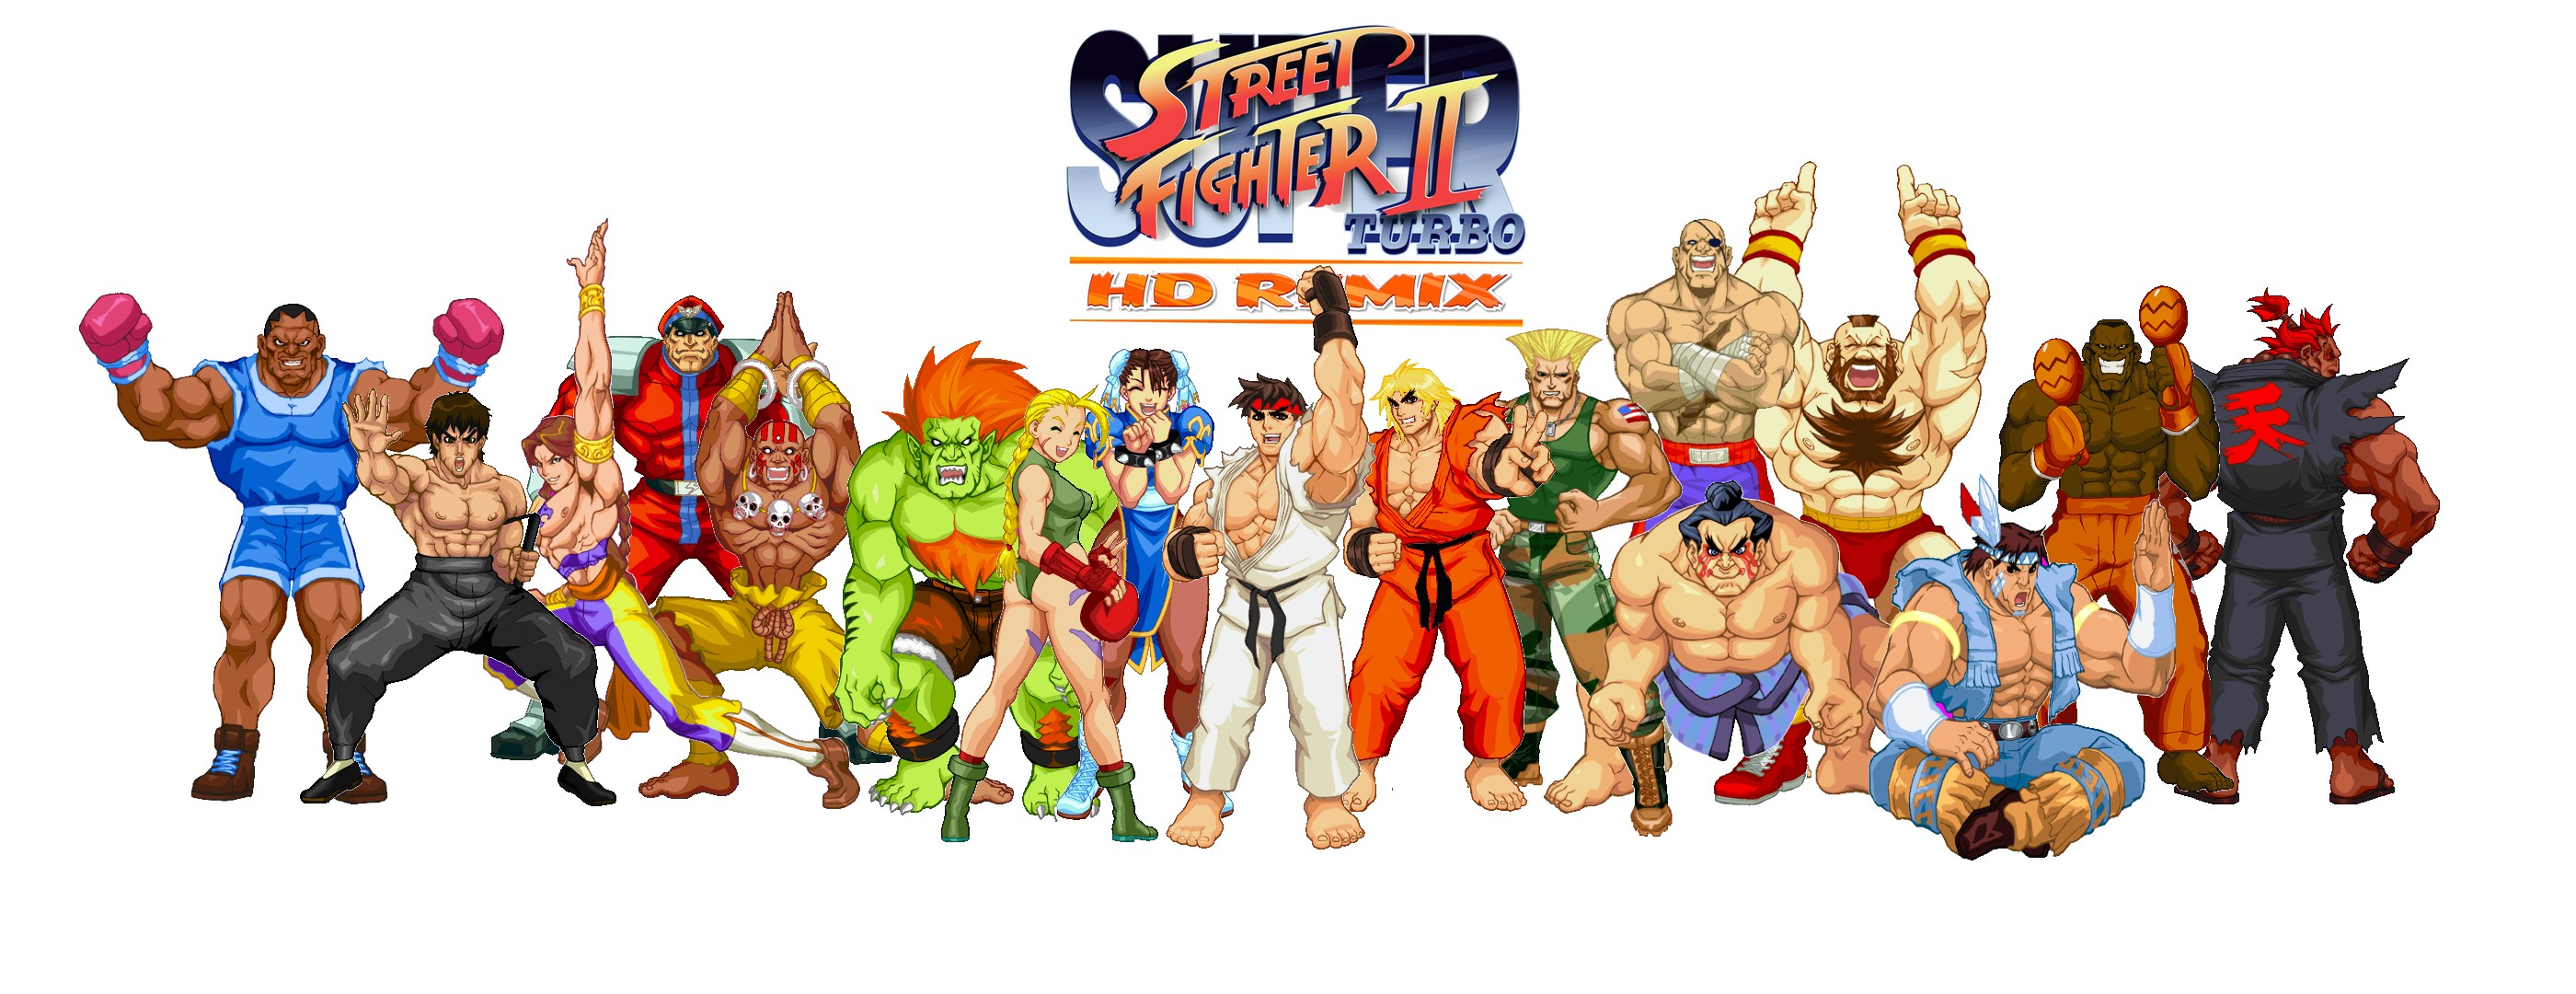 Street Fighter Wallpaper | 2800x1080 | ID:37663